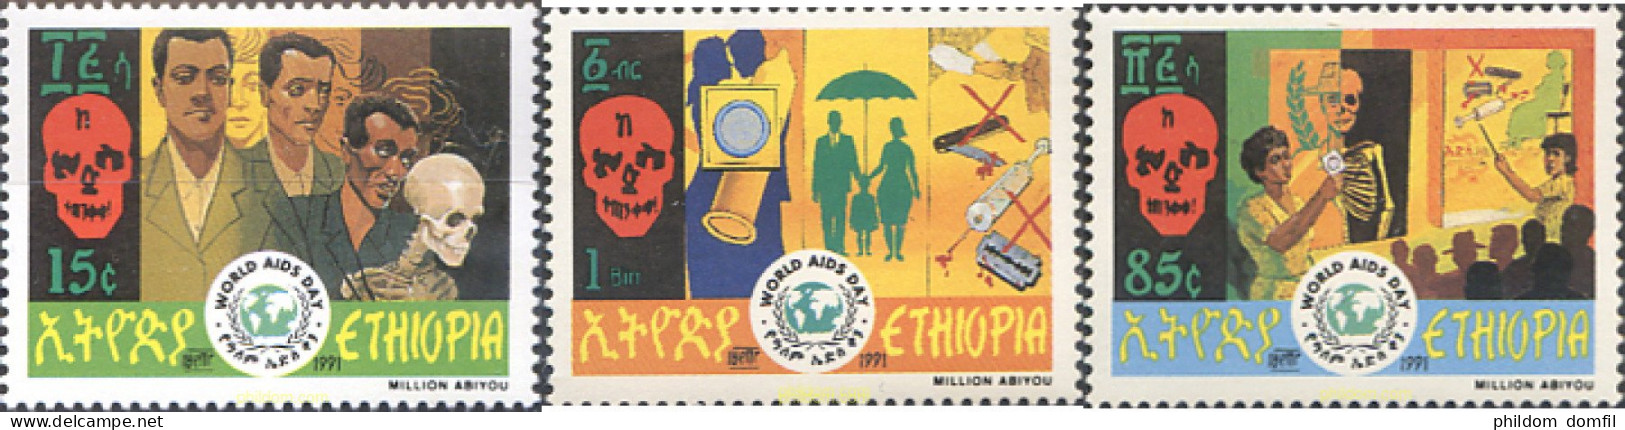 273271 MNH ETIOPIA 1991 DIA MUNDIAL DEL SIDA - Etiopía